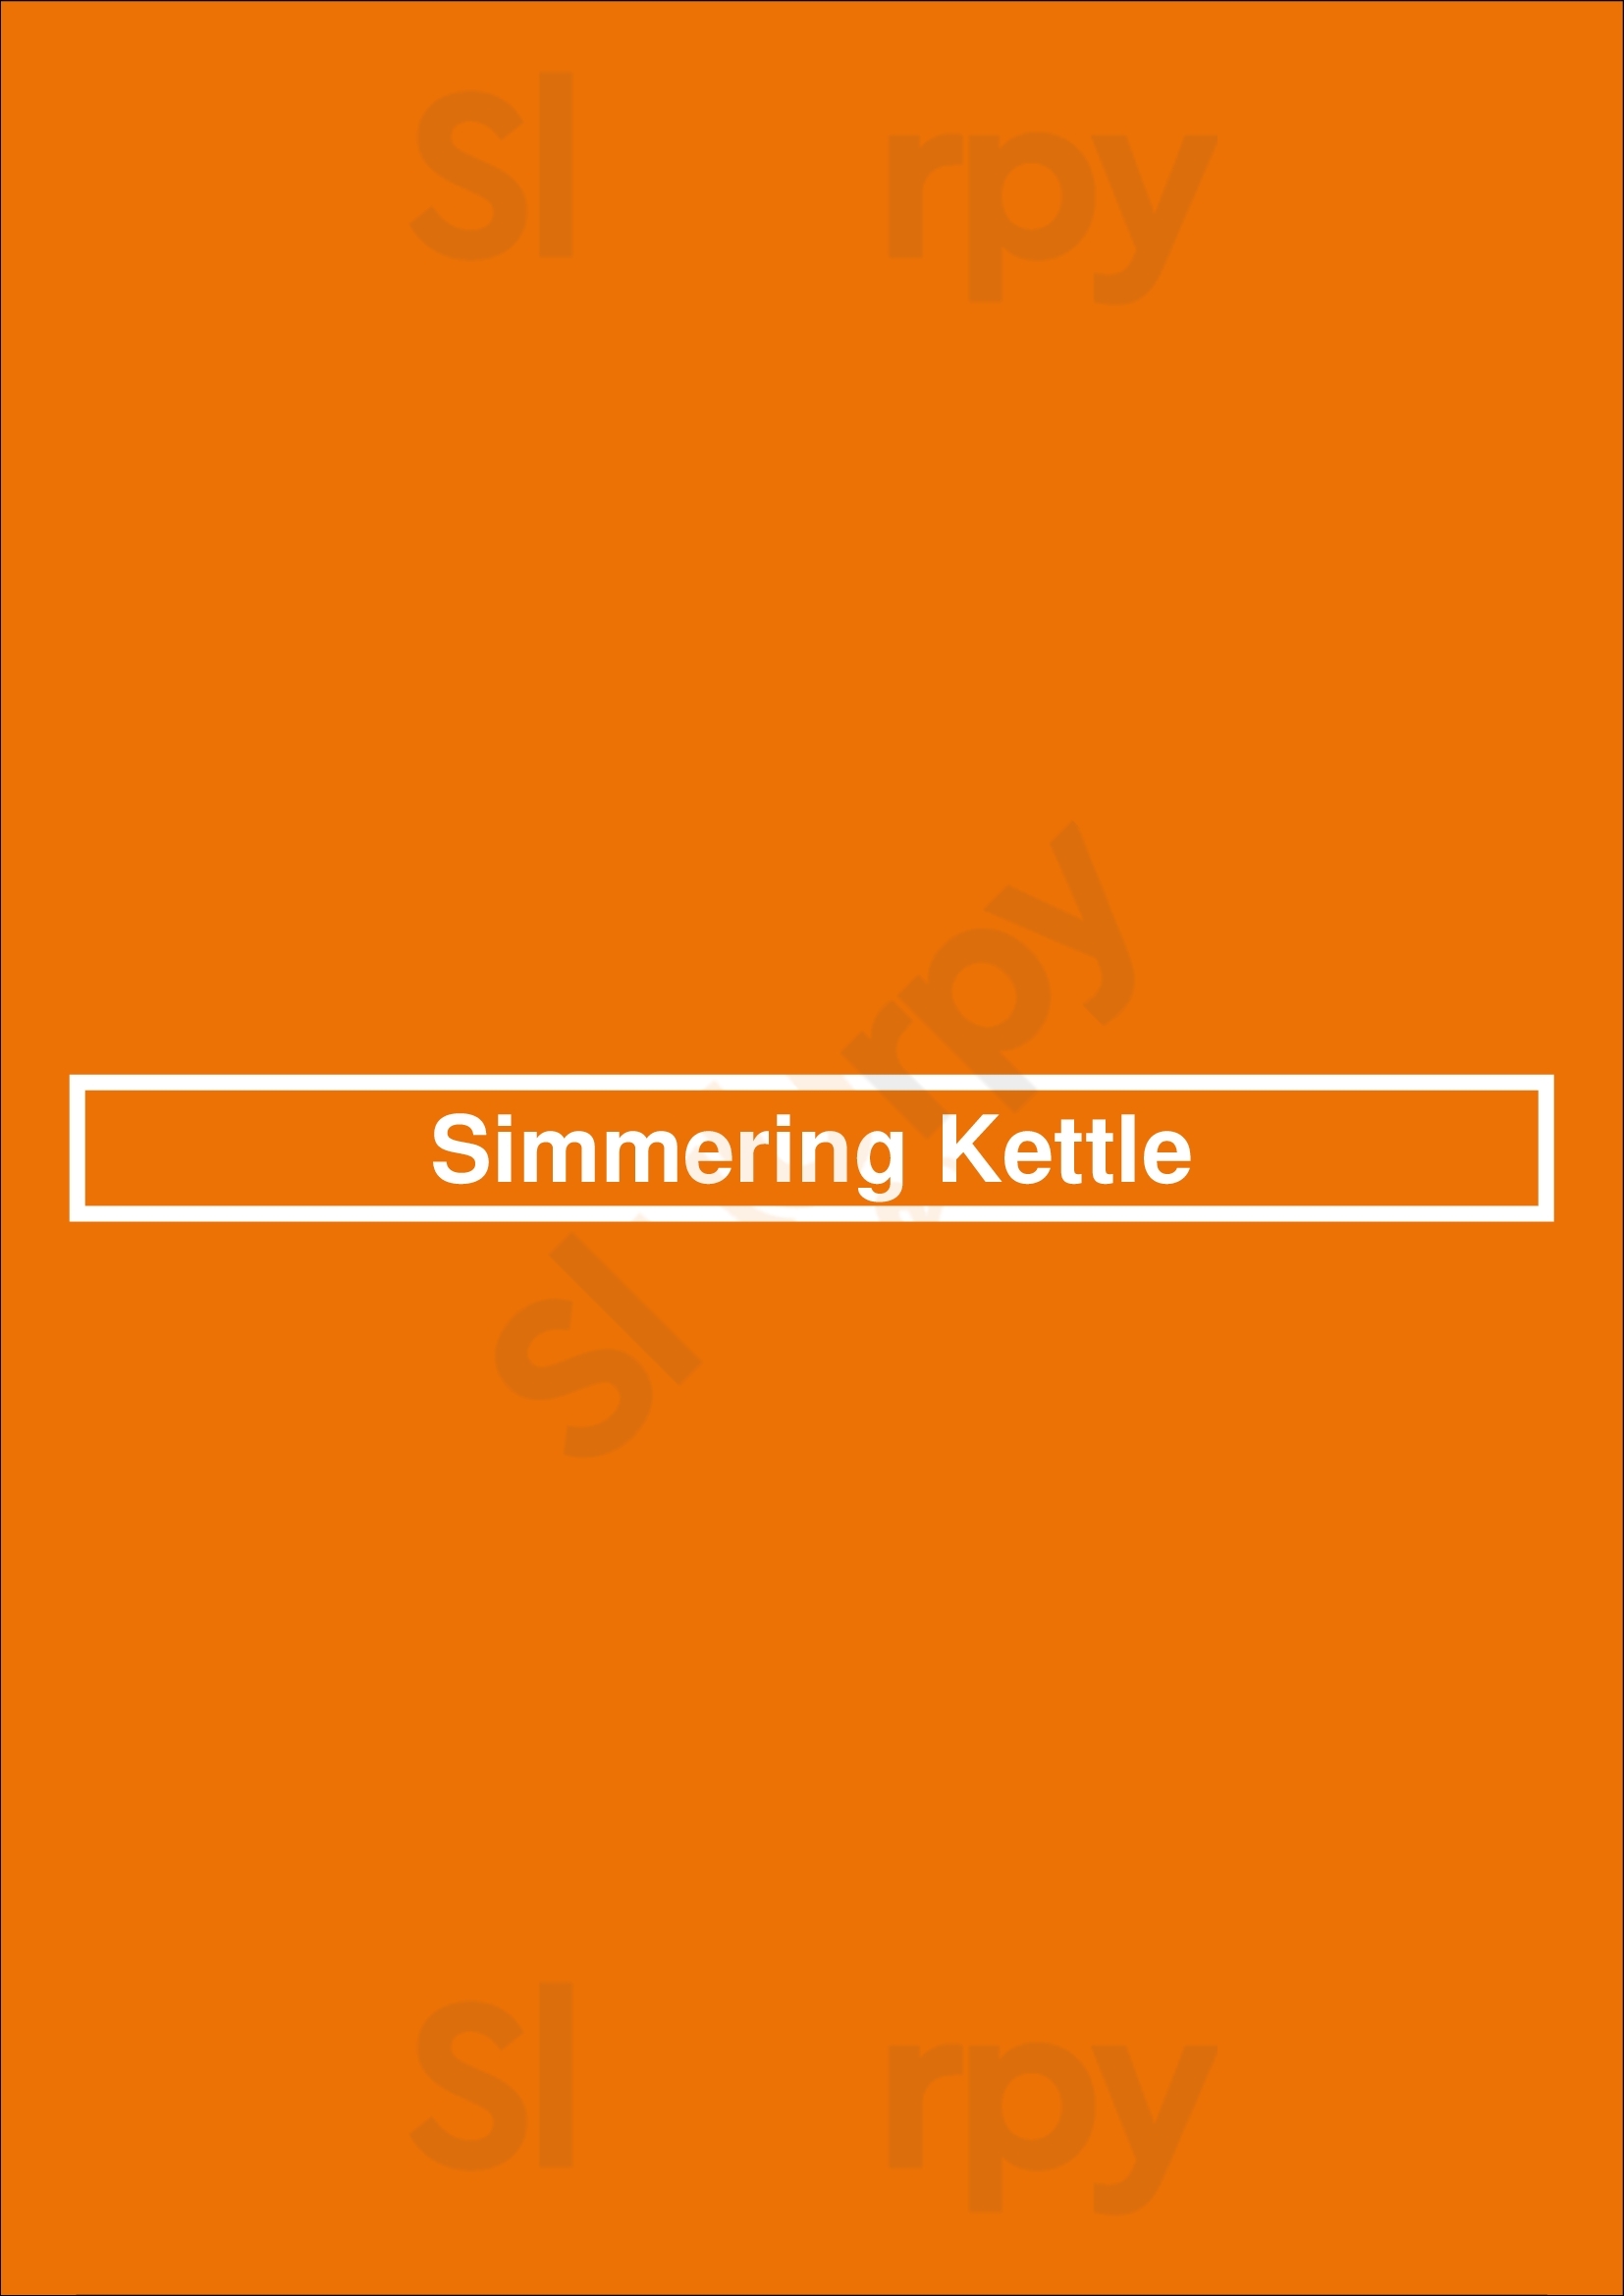 Simmering Kettle Barrie Menu - 1